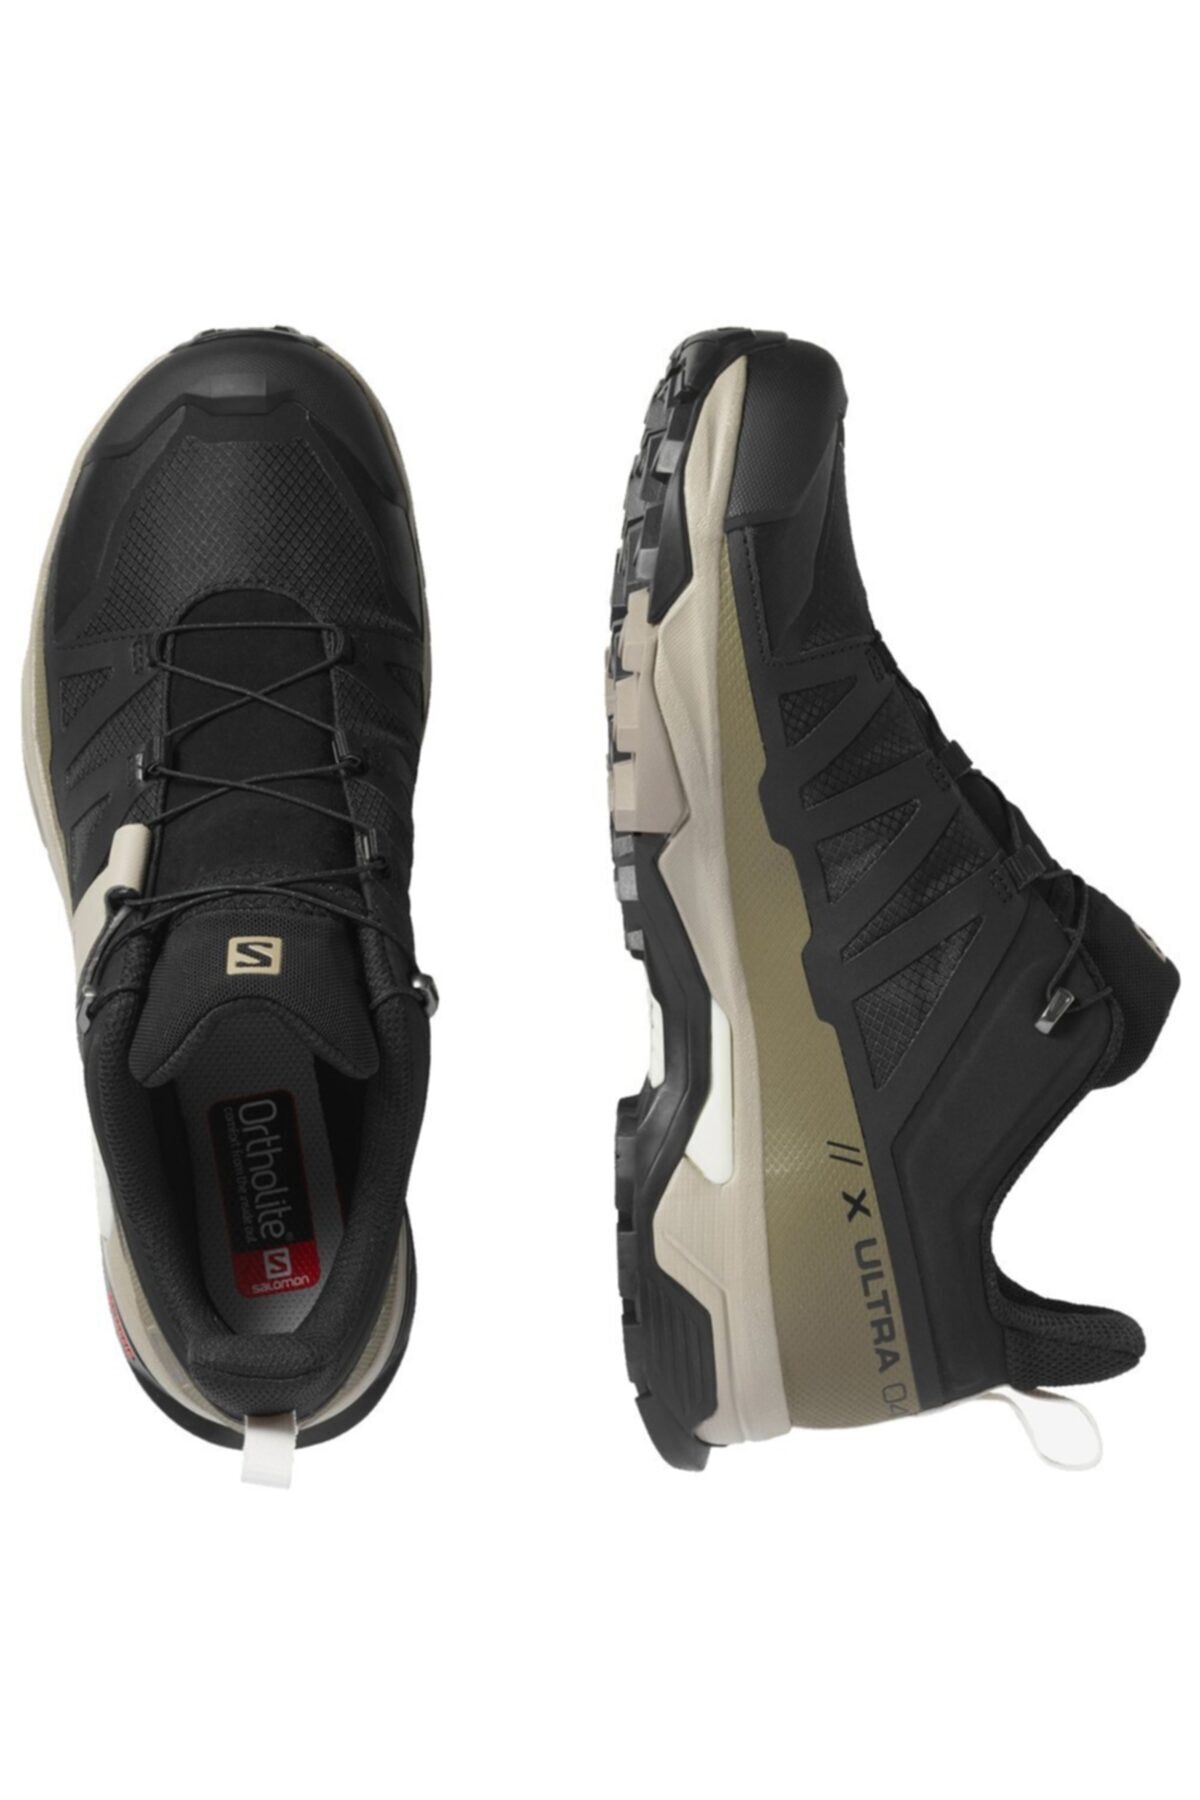 X Ultra 4 Gore-tex® Erkek Outdoor Ayakkabı L41288100-Siyah-yeşil